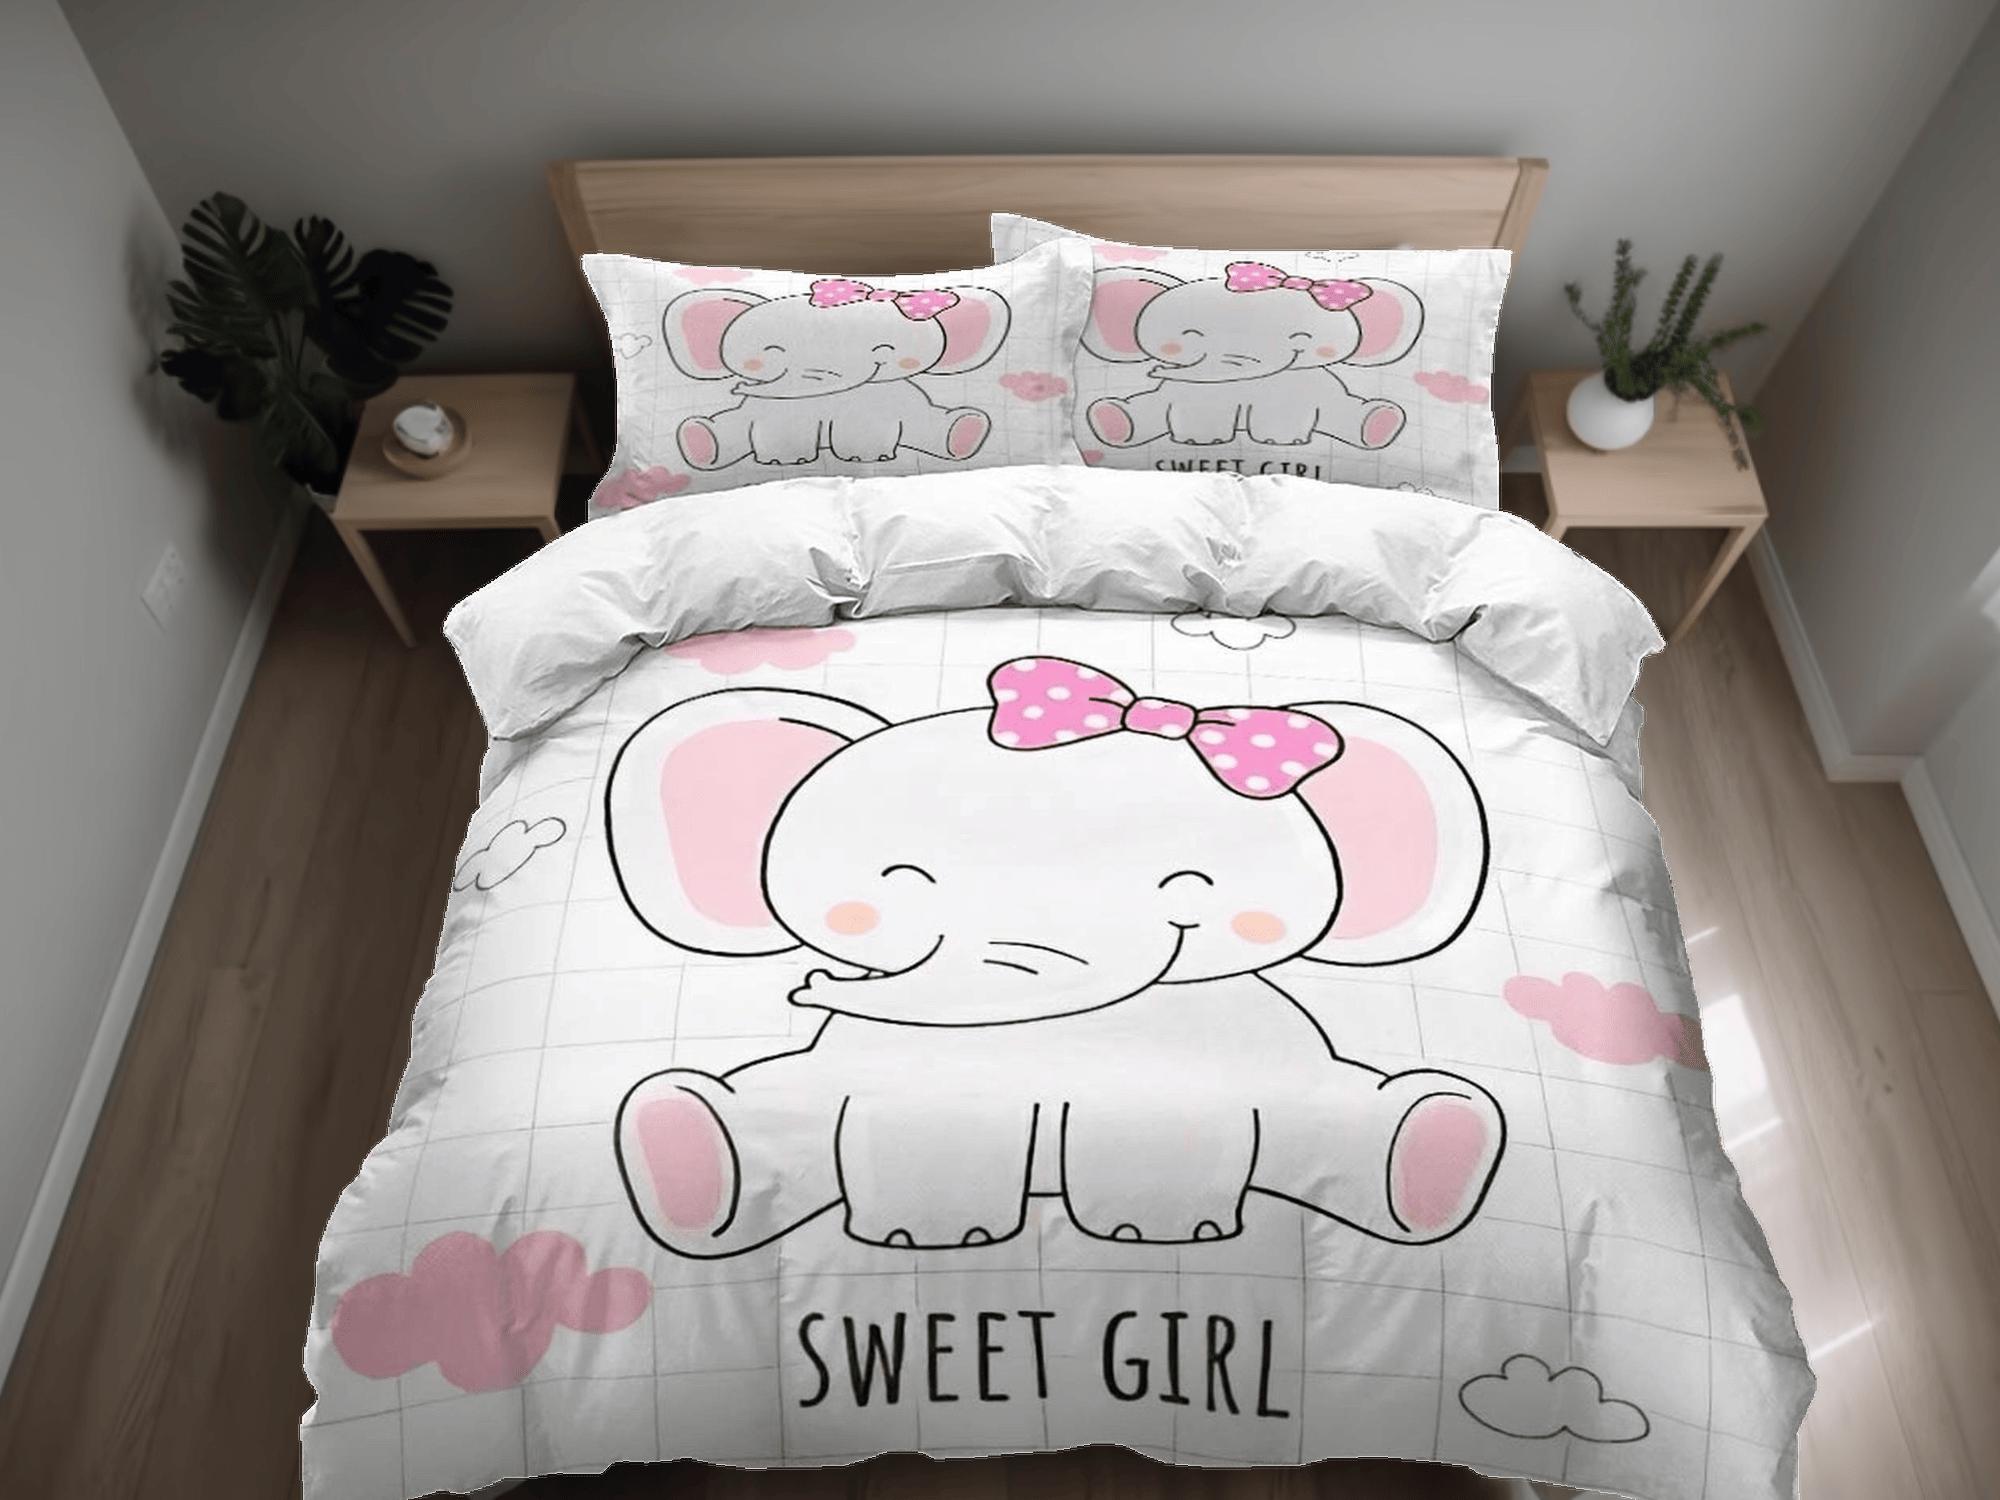 daintyduvet Sweet girl elephant bedding cute duvet cover set, kids bedding full, nursery bed decor, elephant baby shower, girl toddler bedding